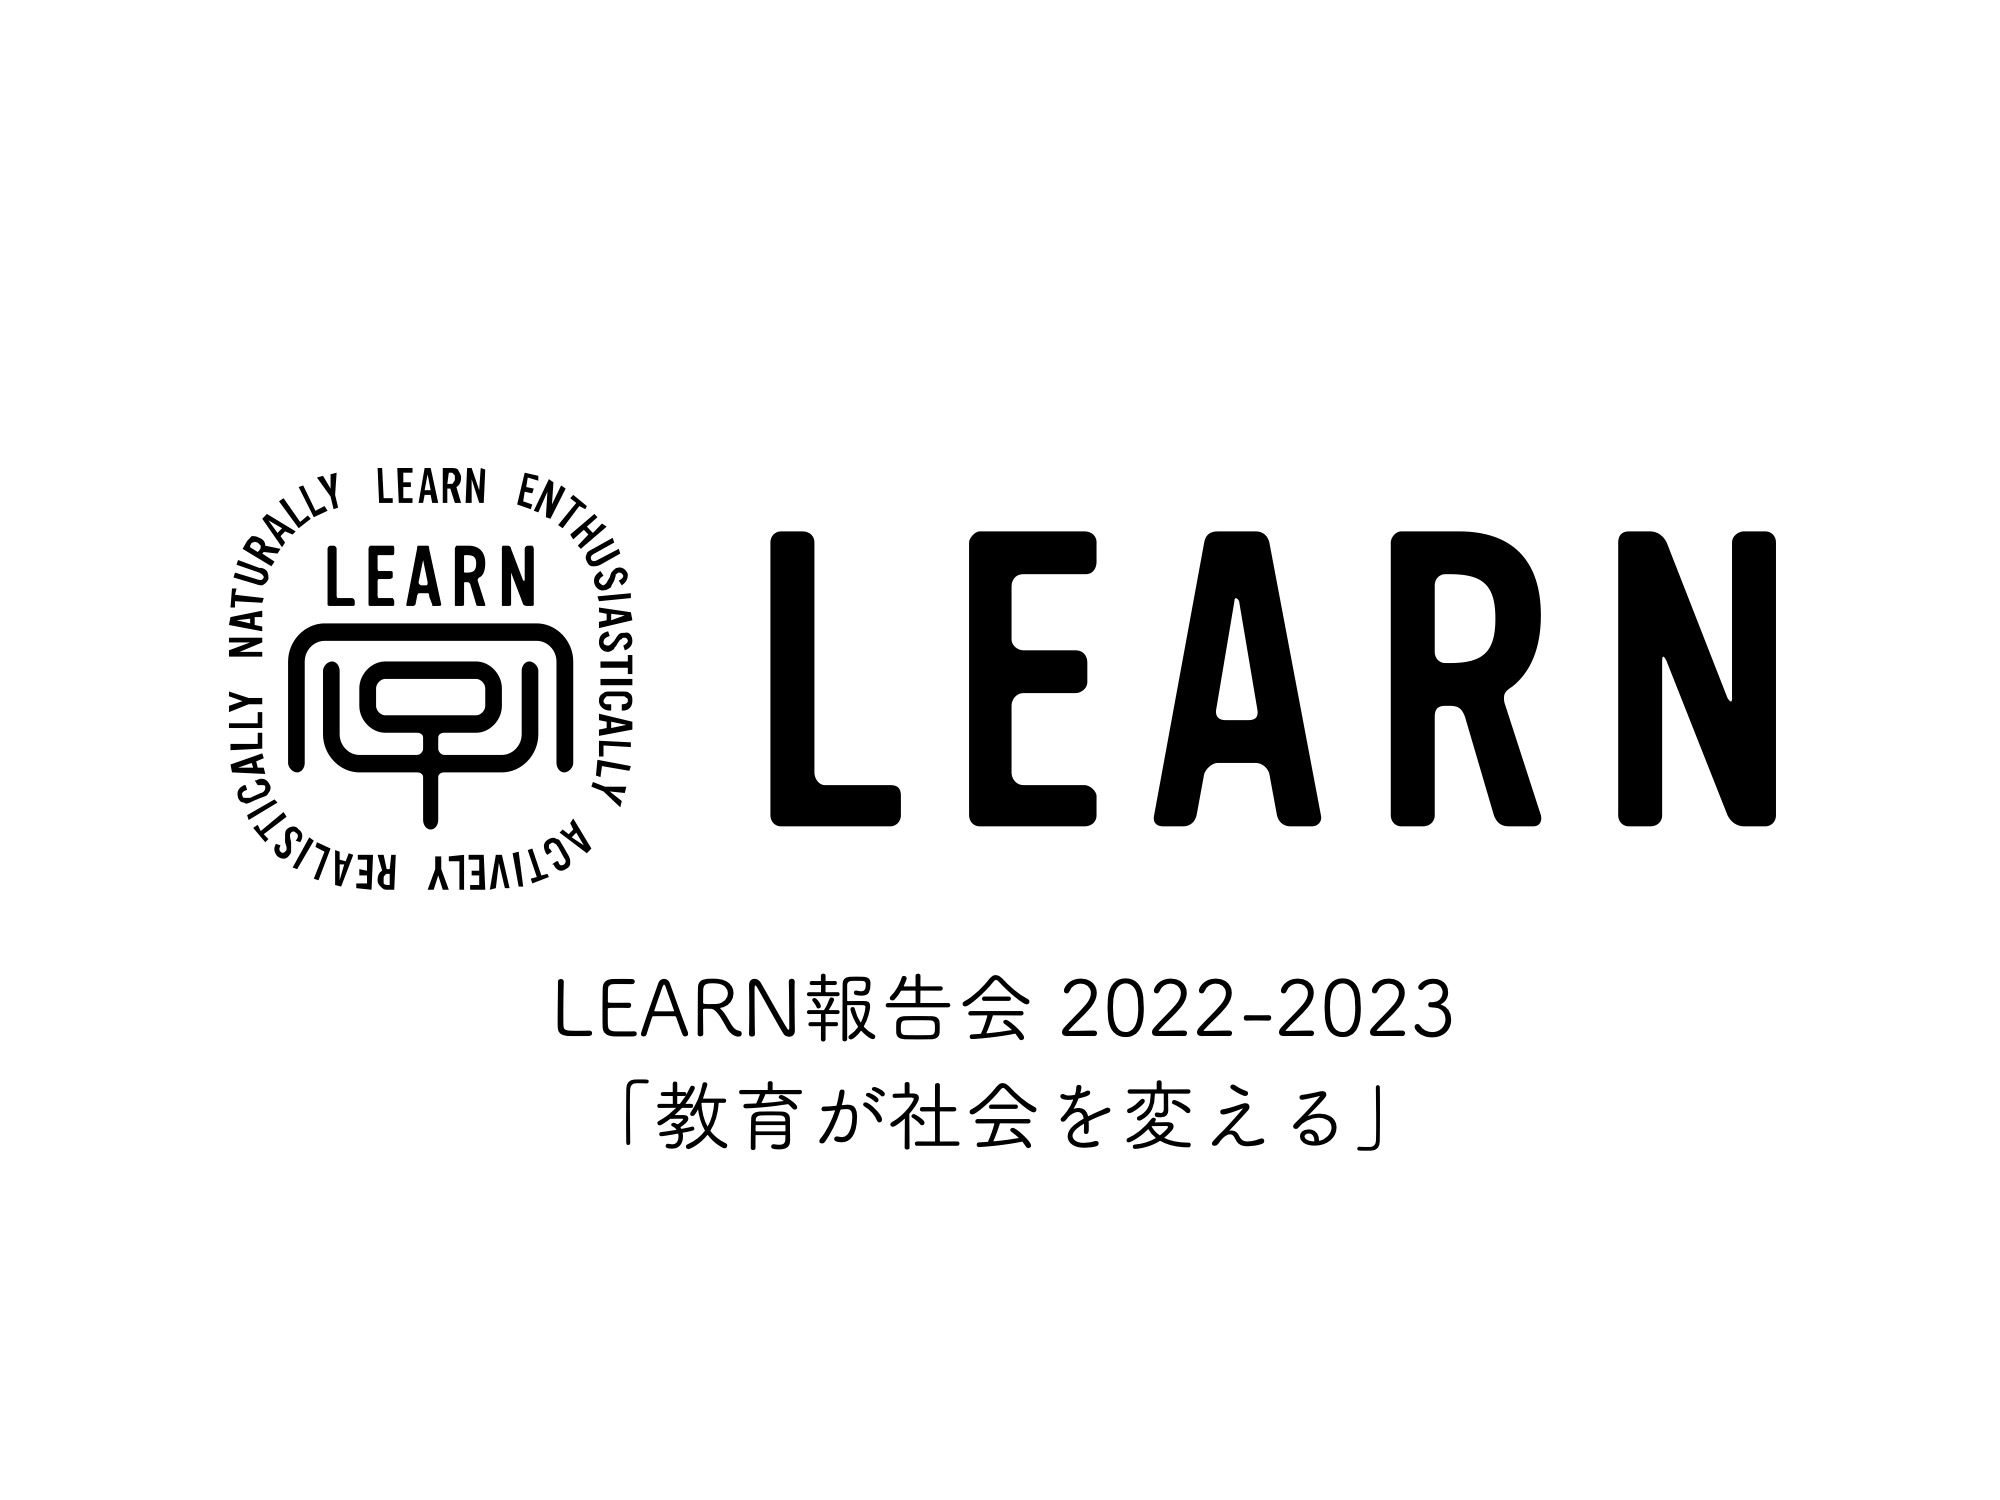 LEARN 報告会 2022-2023「教育が社会を変える」